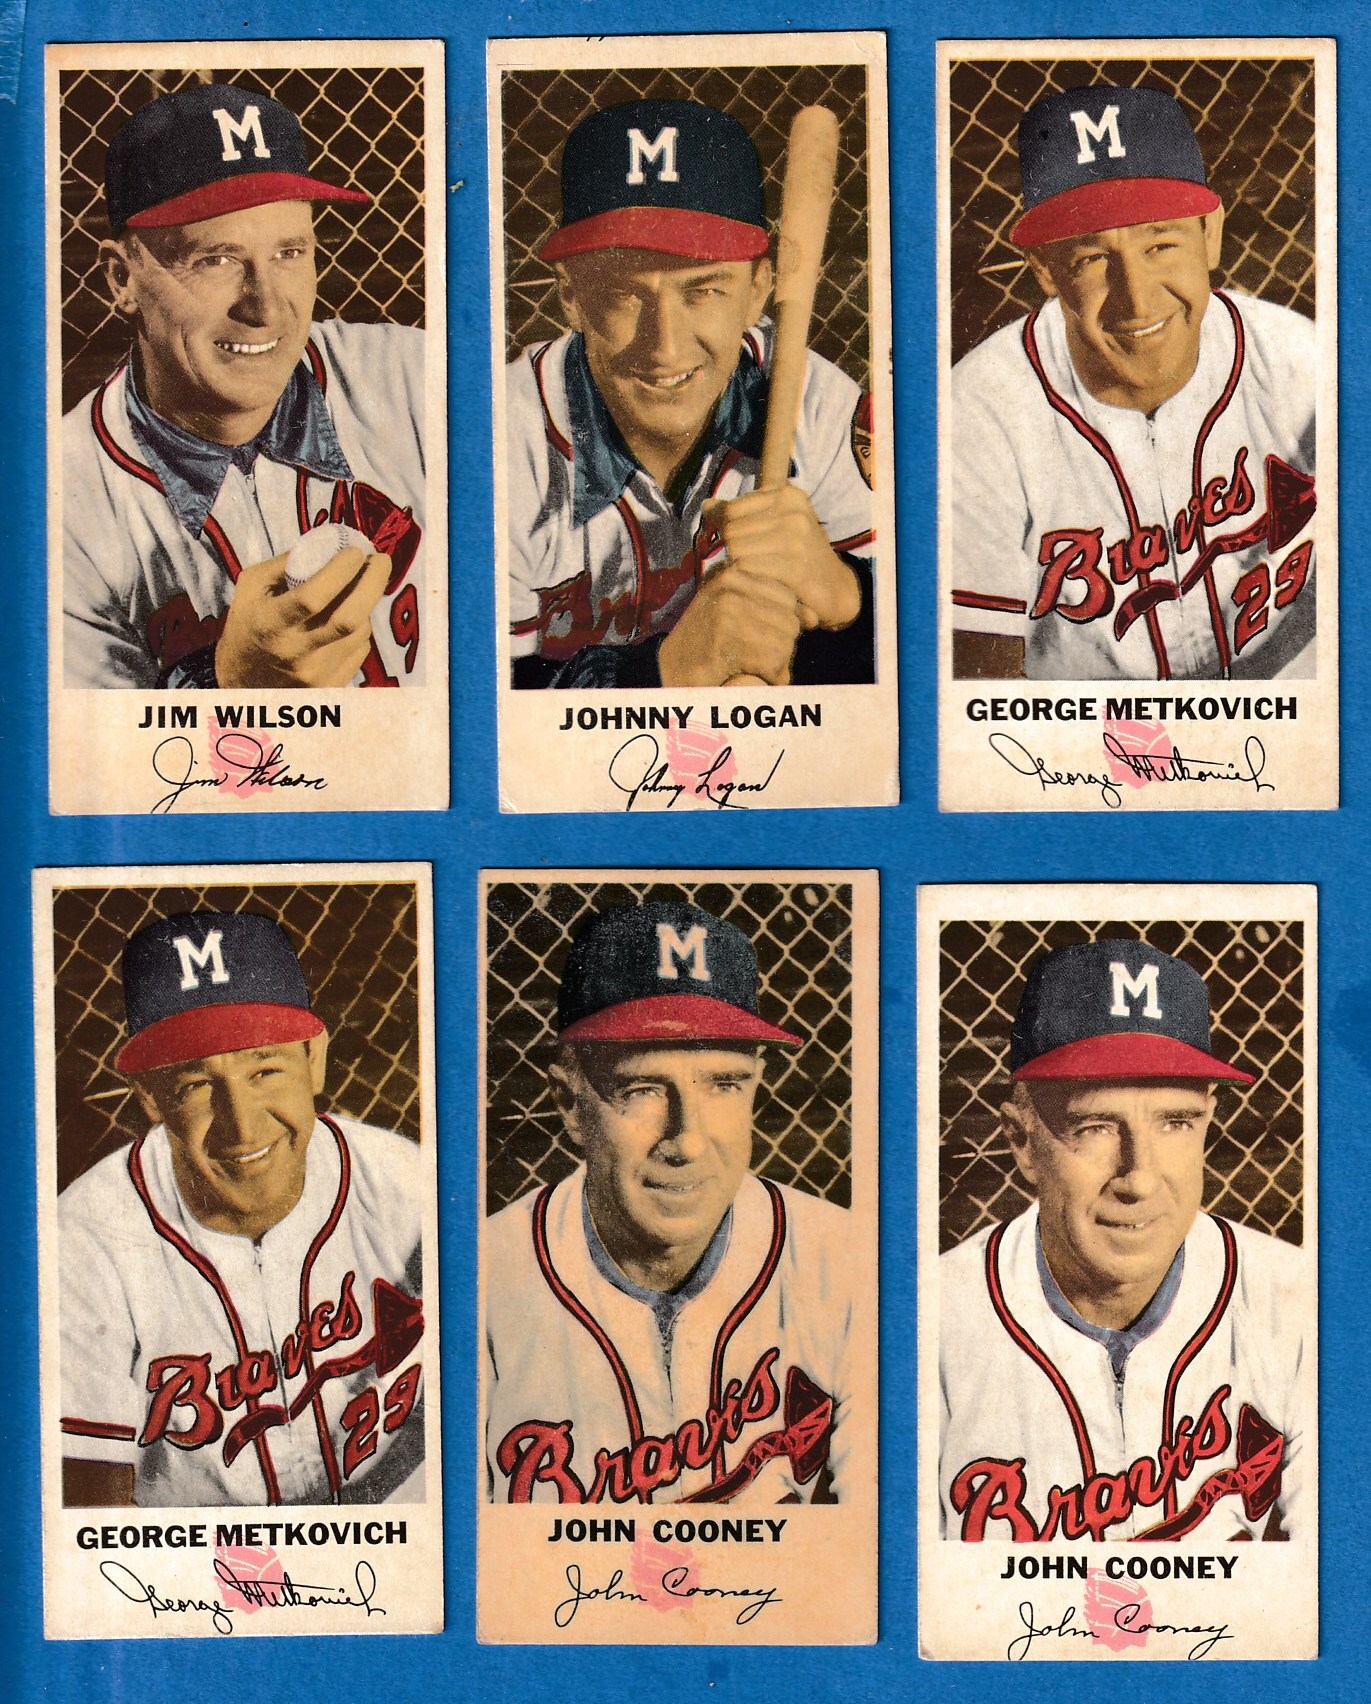 1954 Johnston Cookies #19 Jim Wilson (Braves) Baseball cards value